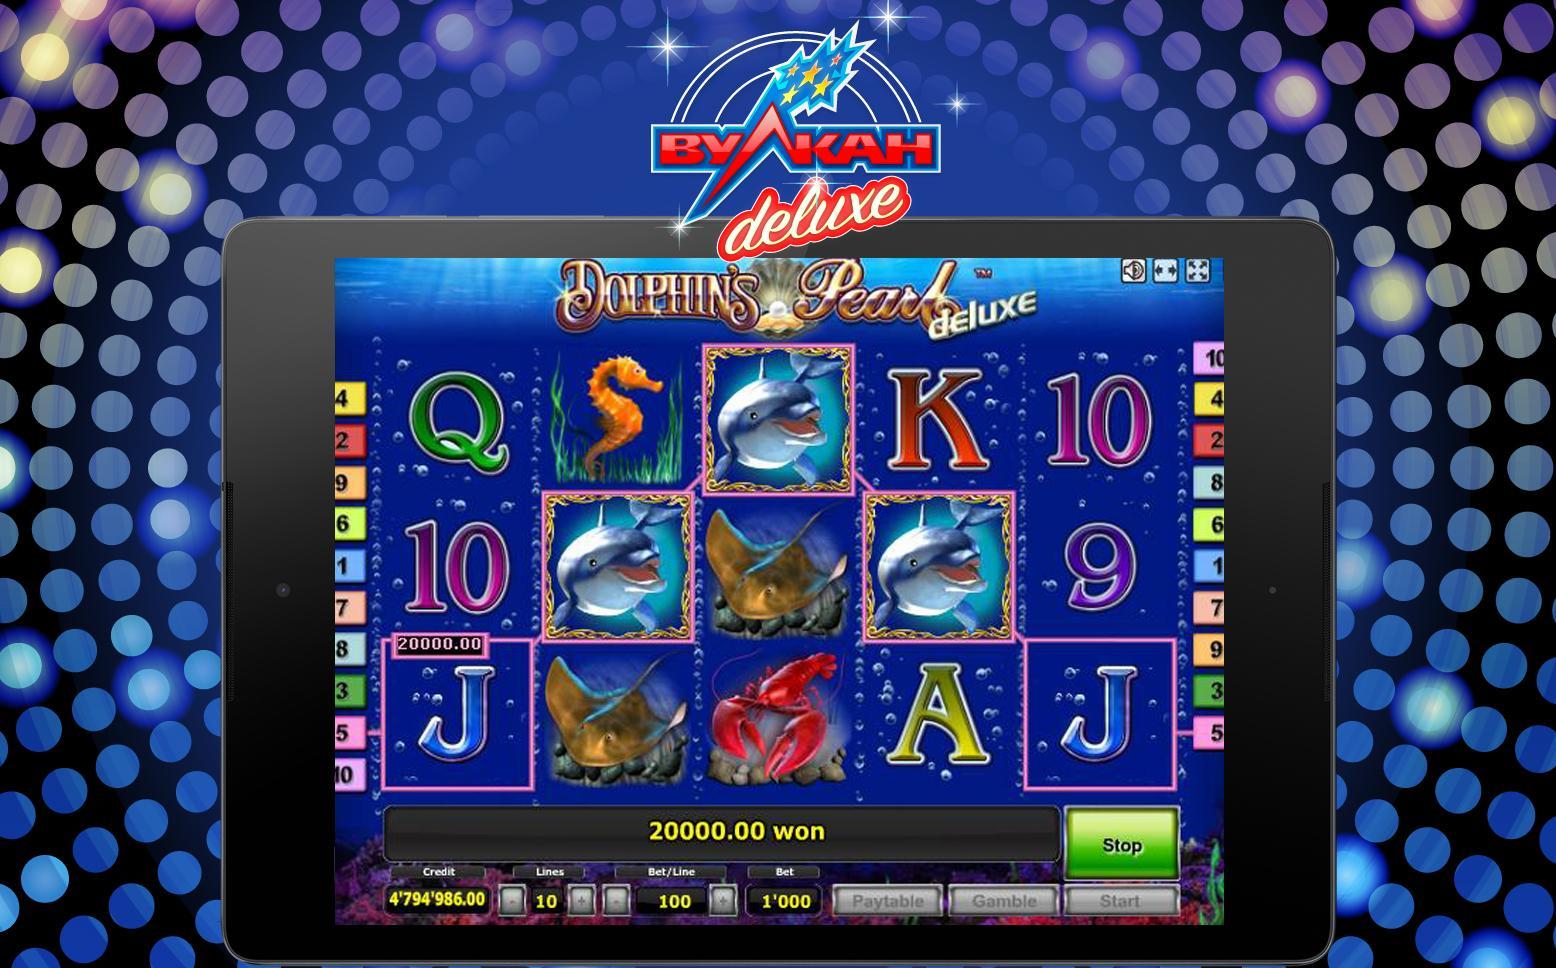 Вулкан делюкс казино онлайн играть бесплатно в игровые автоматы собаки без регистрации